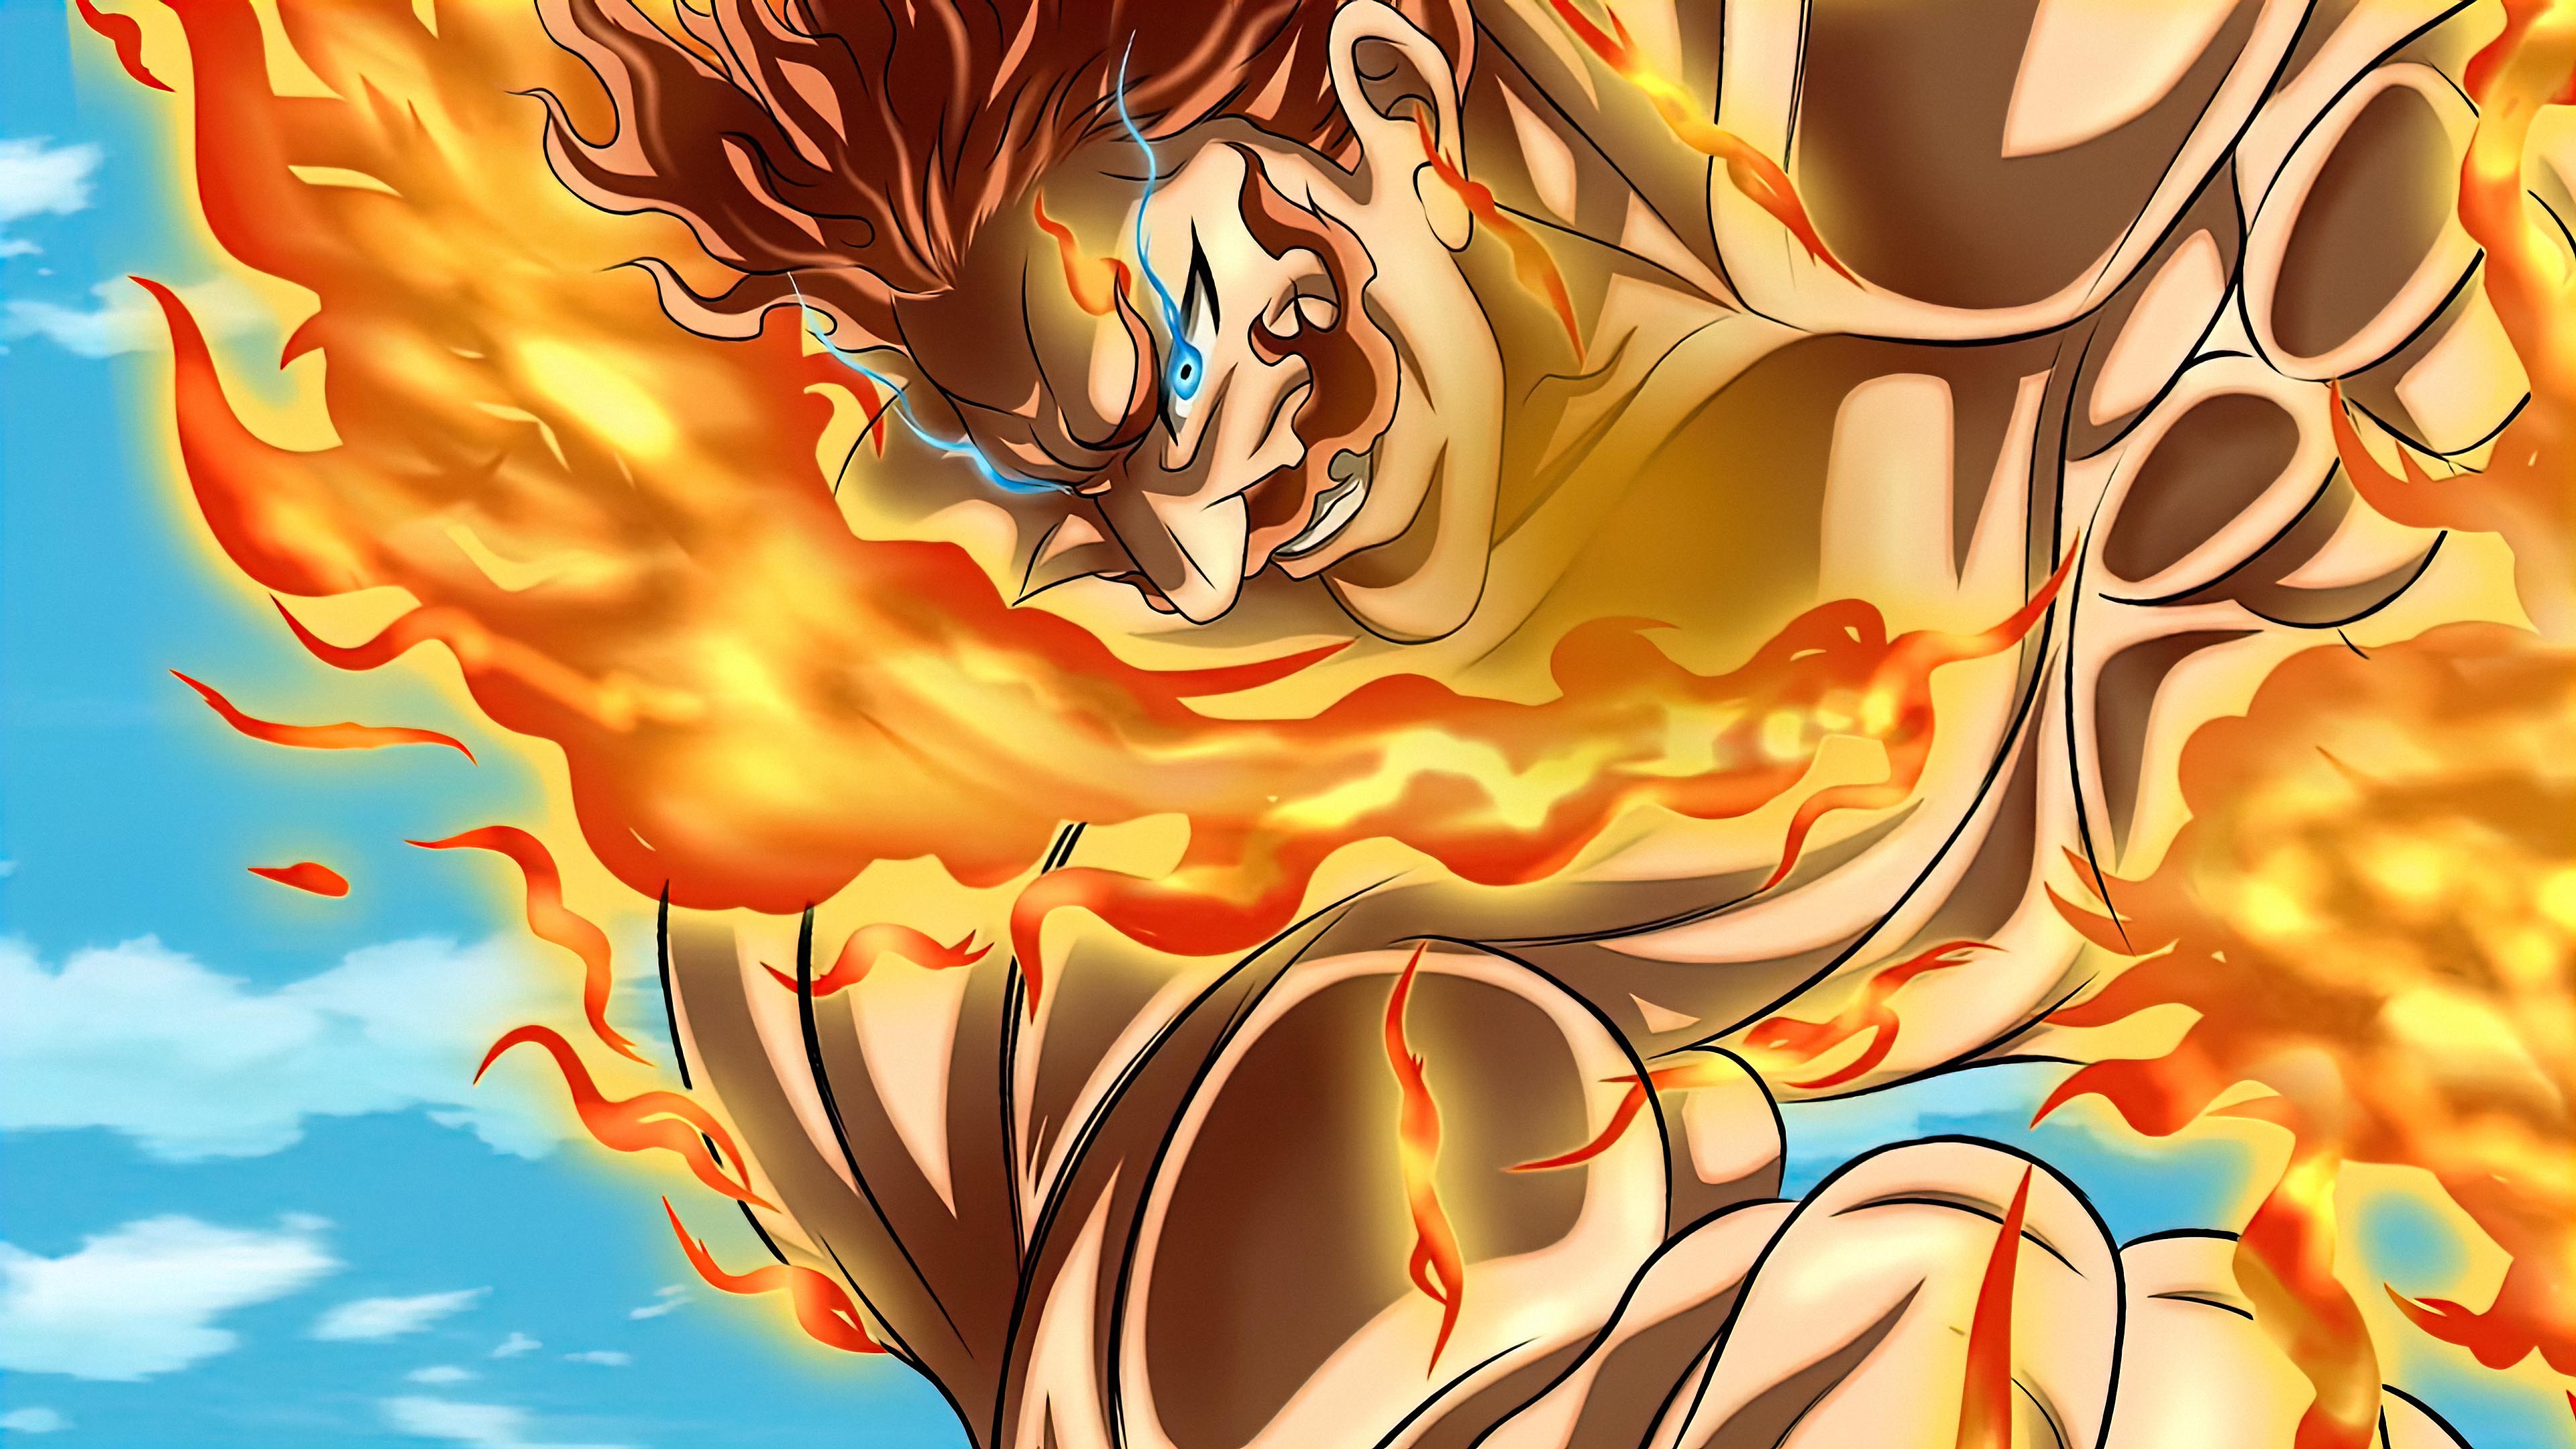 Escanor Nanatsu No Taizai Seven Deadly Sins Anime Boys Anime Anime Men Burning Fire 3840x2160